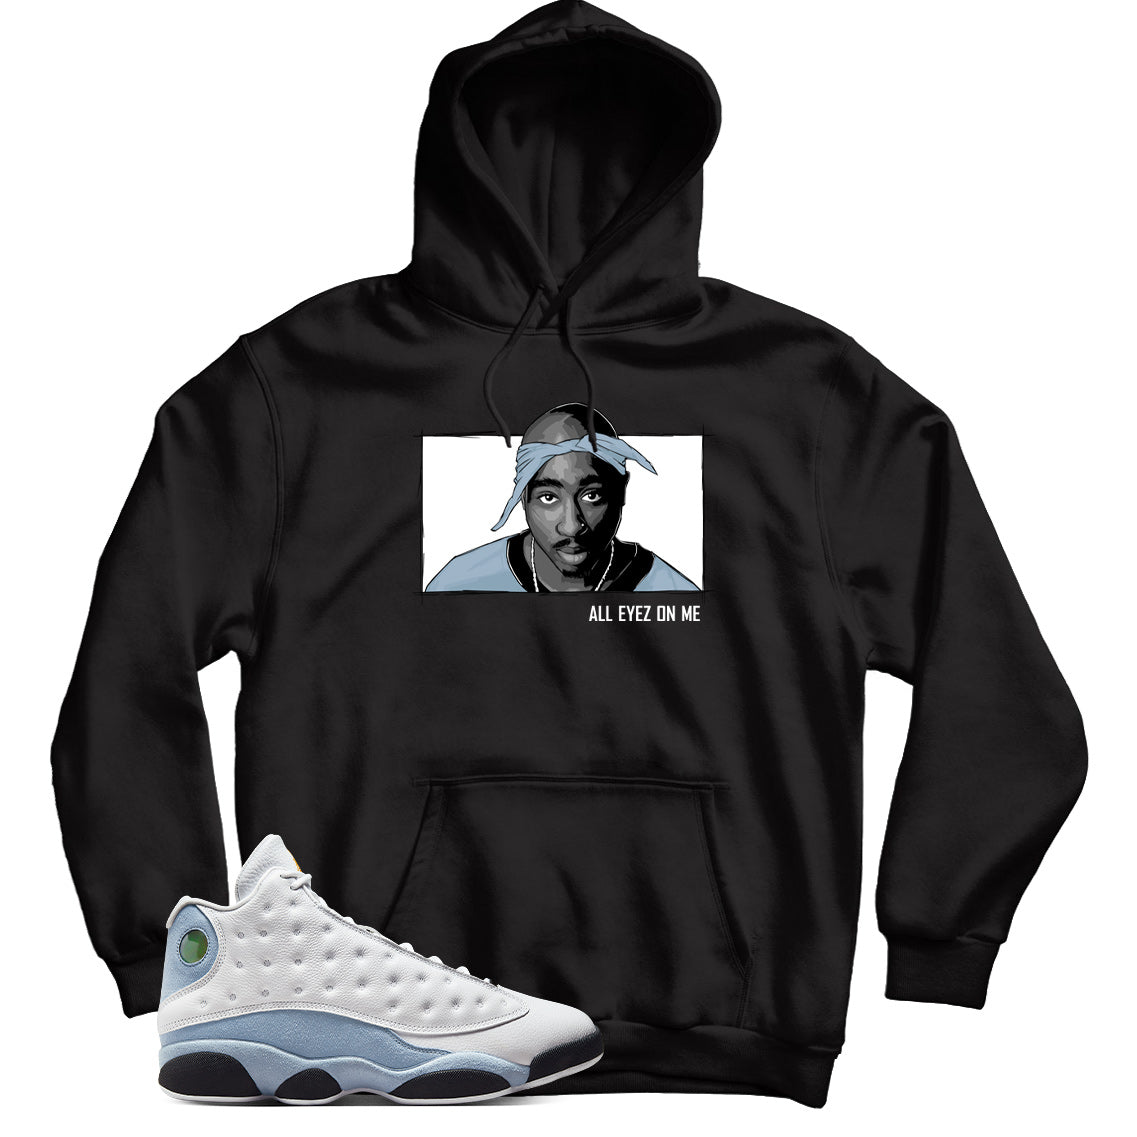 Jordan 13 Blue Grey hoodie